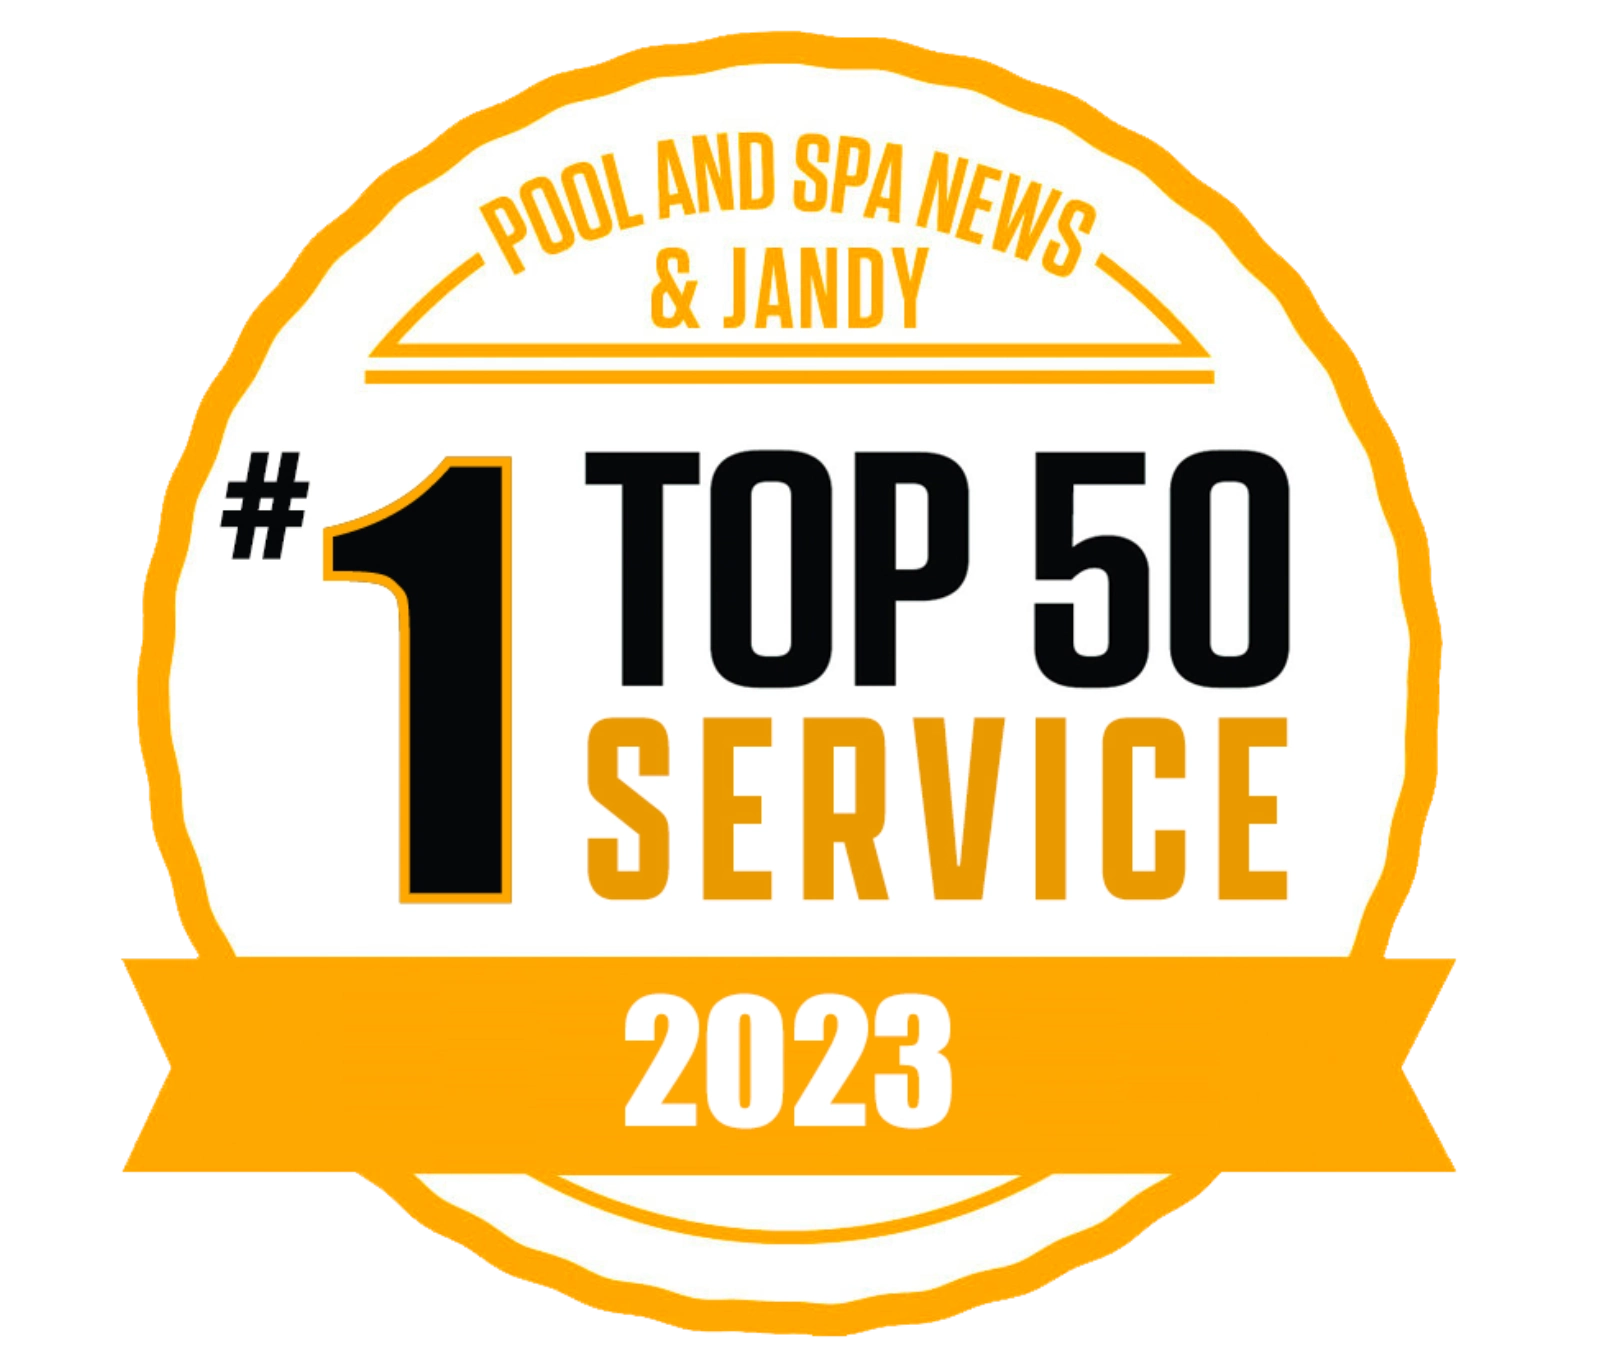 SPS service logo